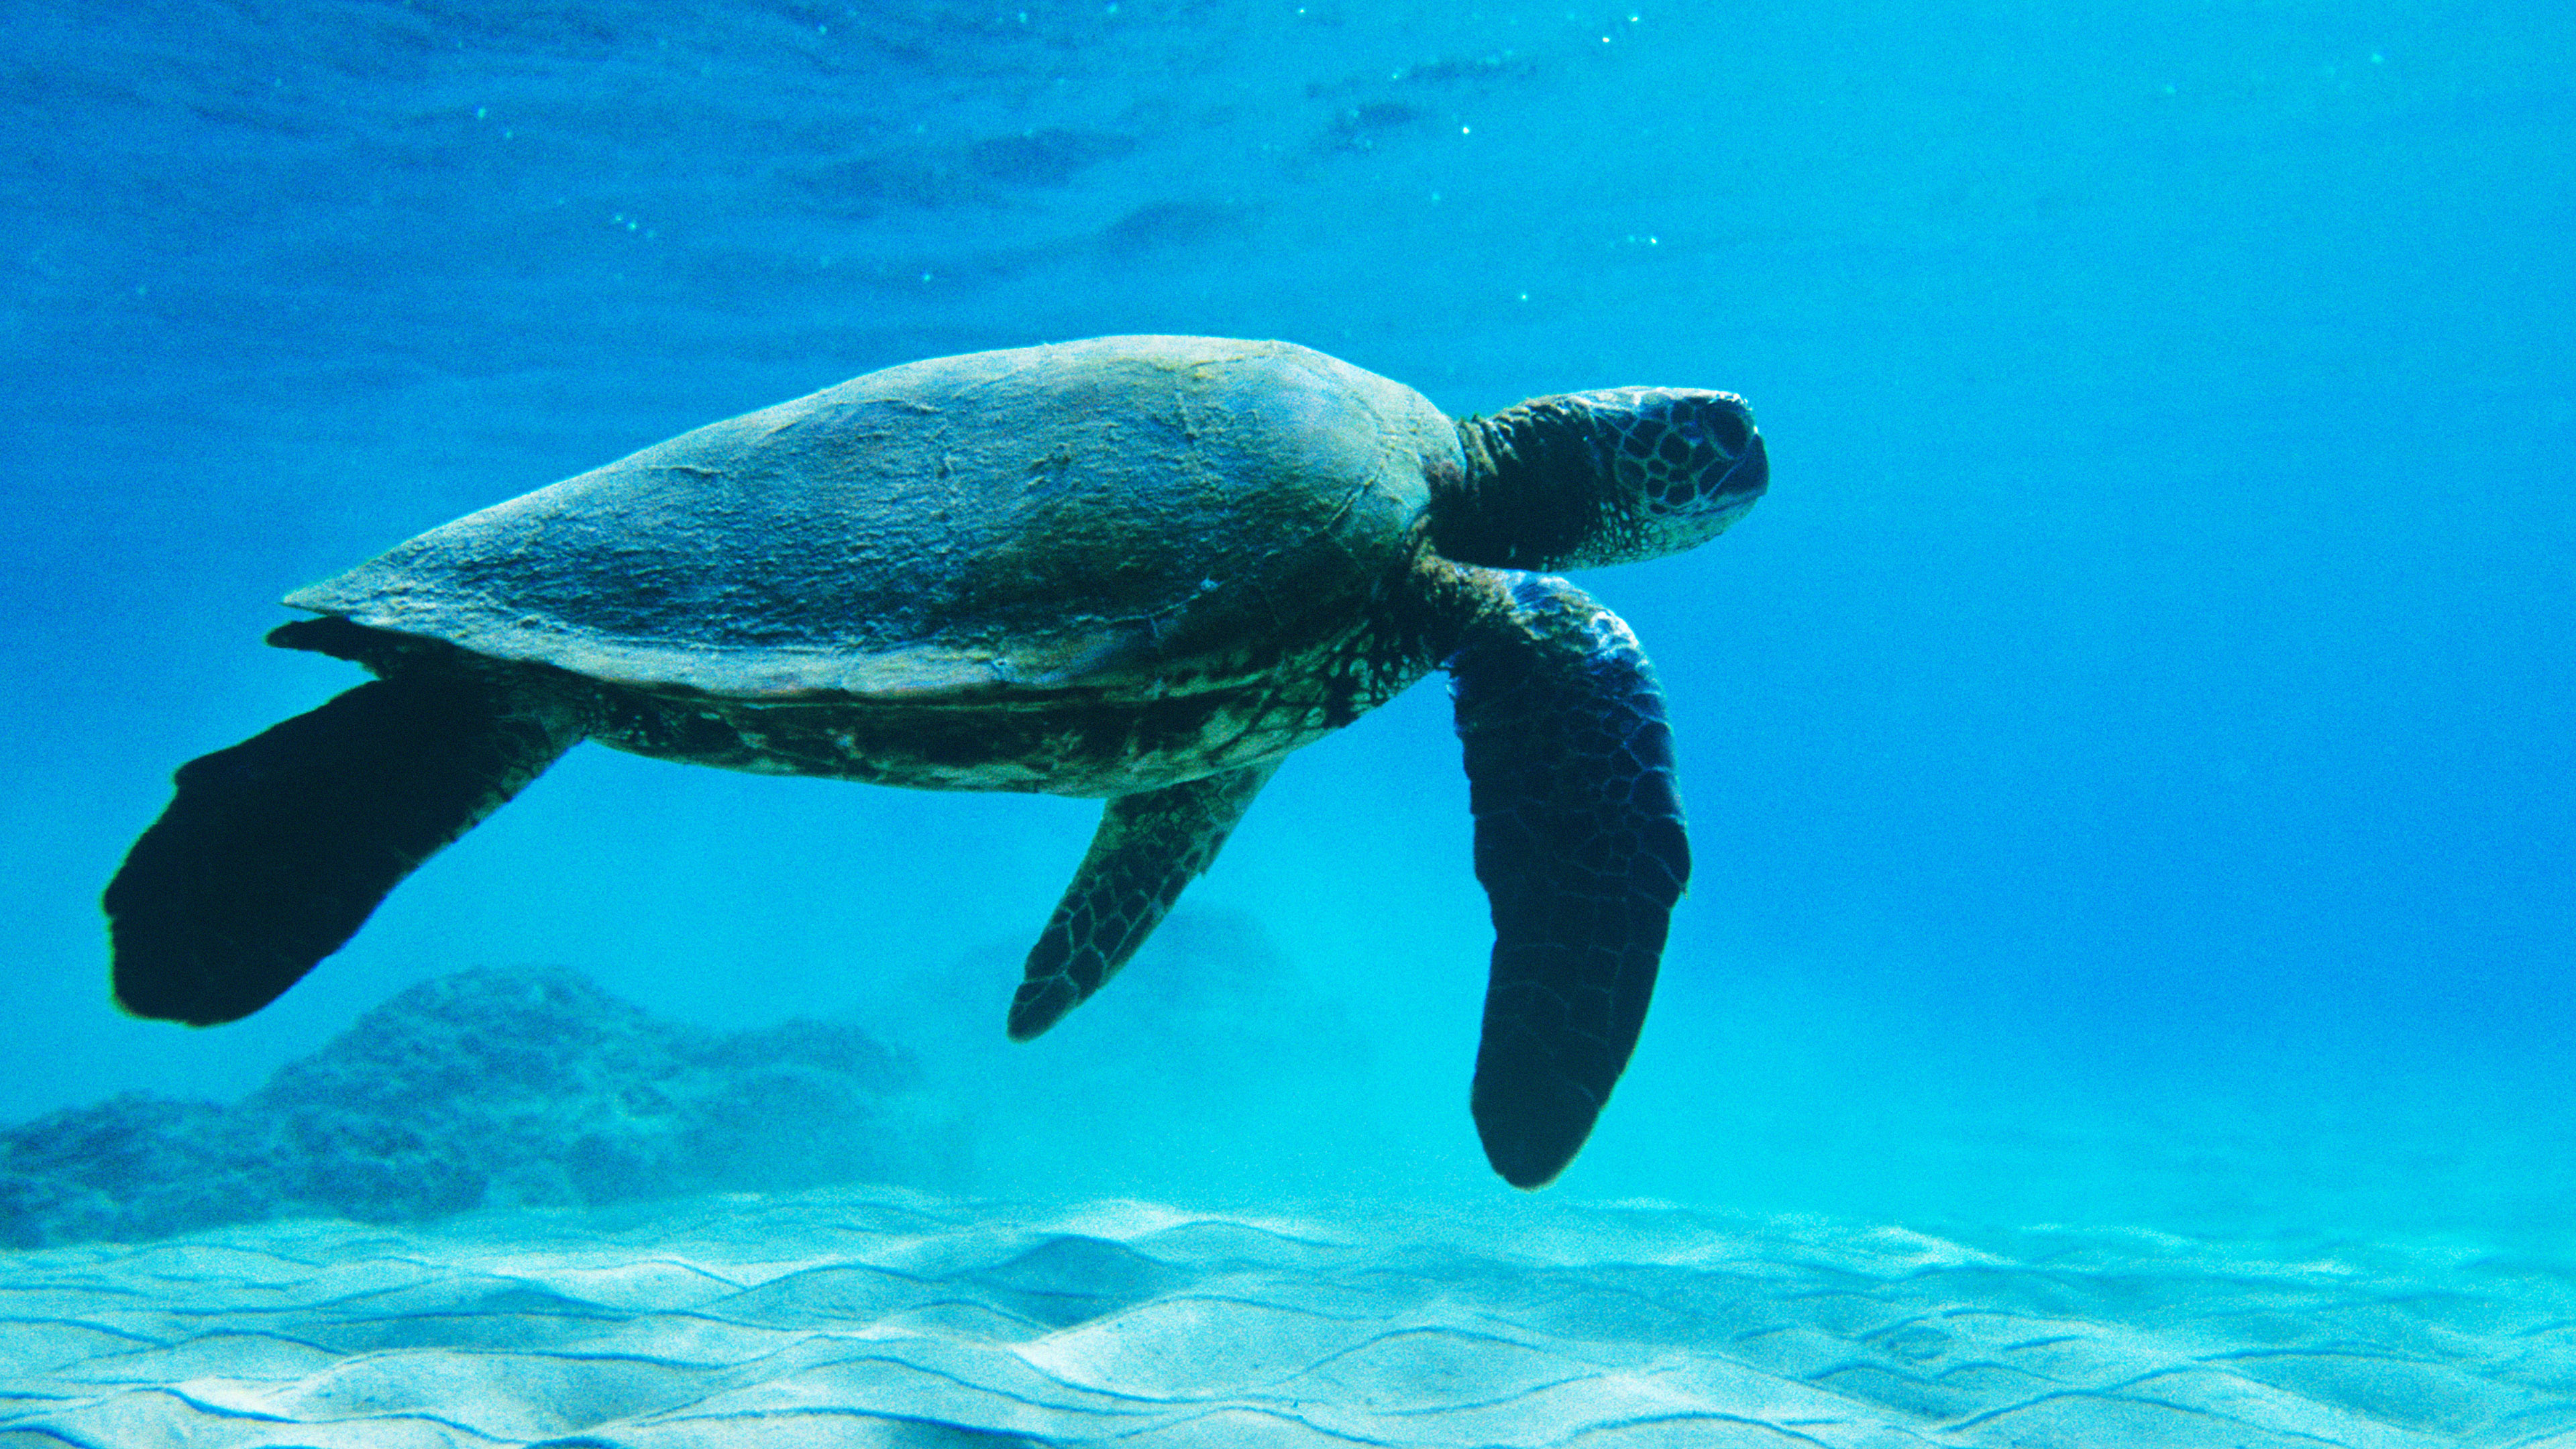 Turtle sea ocean animal, Cute marine creatures, Oceanic beauty, Underwater wonders, 3840x2160 4K Desktop